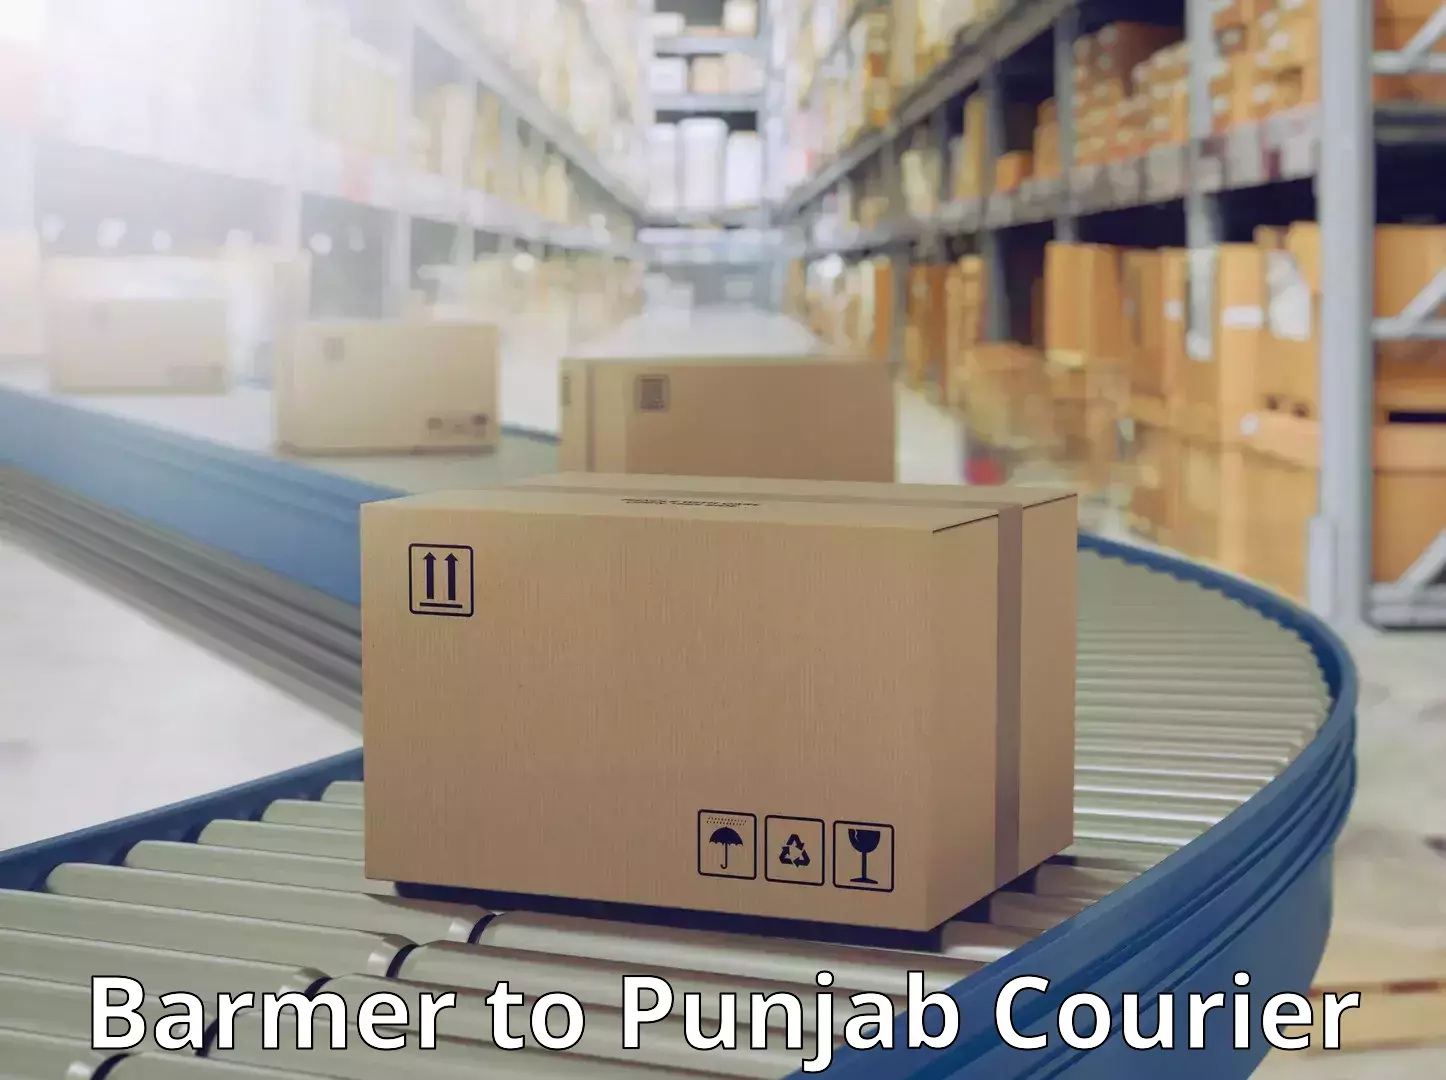 Affordable parcel service Barmer to Central University of Punjab Bathinda